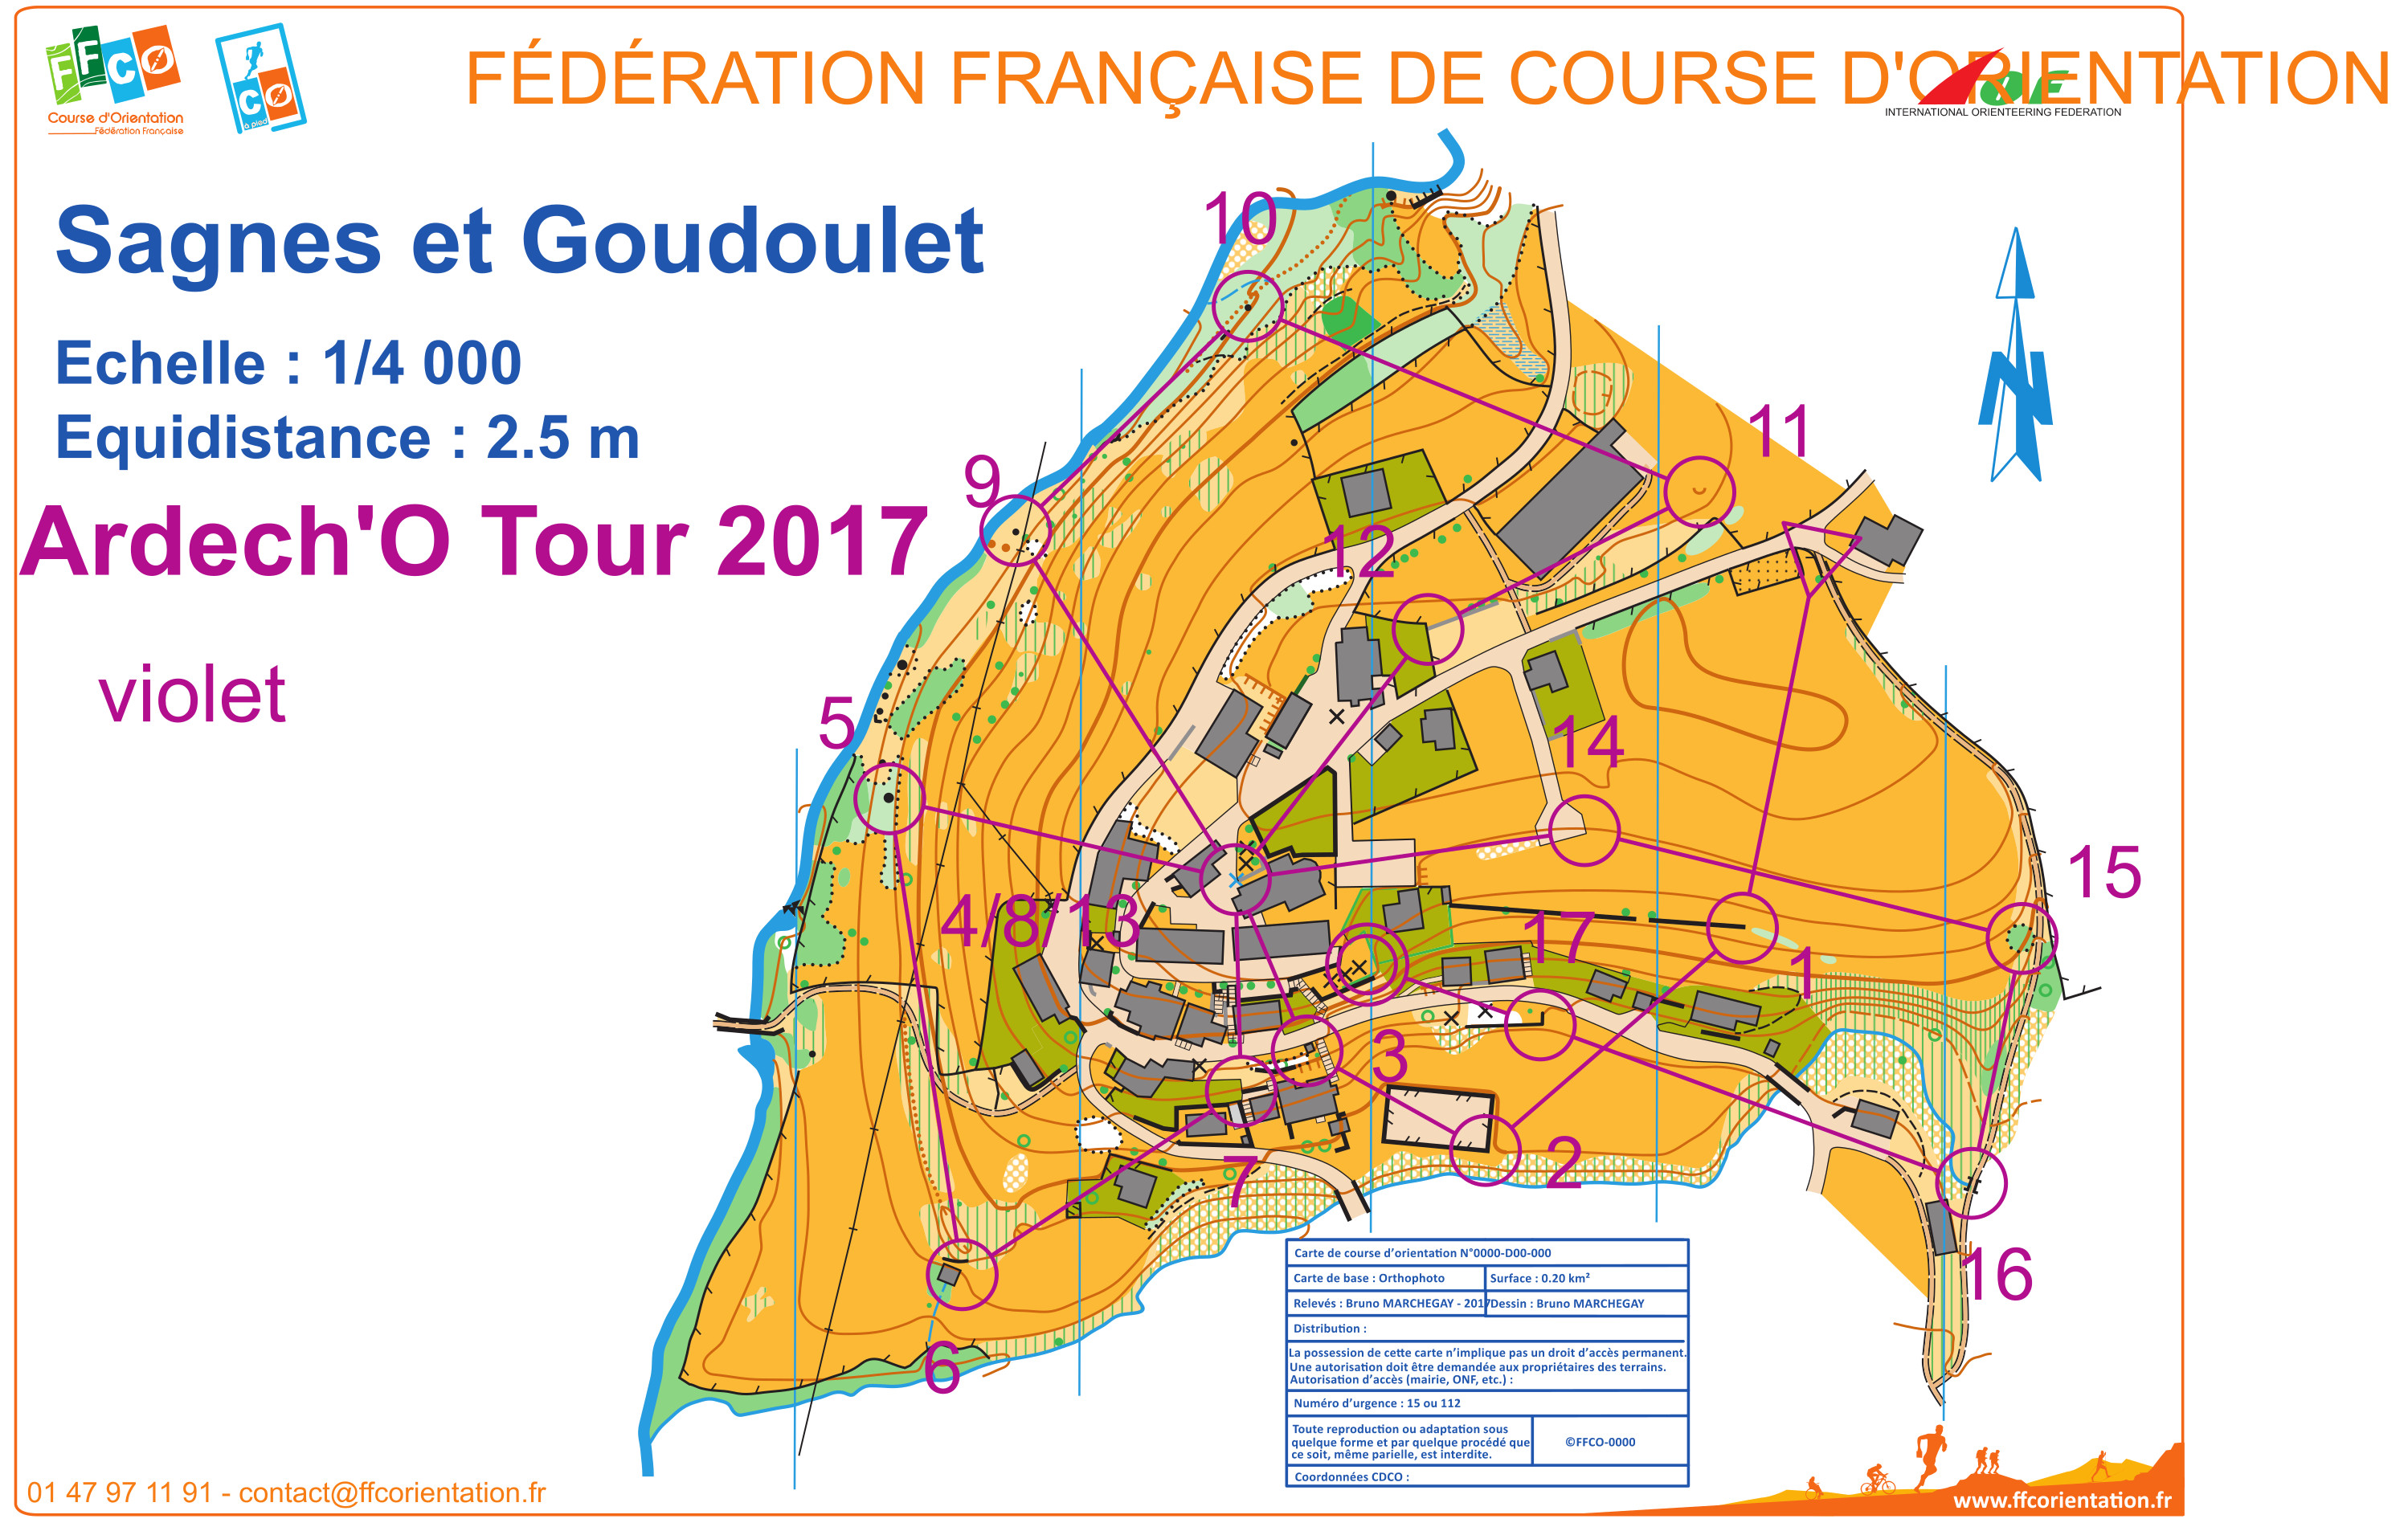 Sagnes et Goudoulet (28-07-2017)